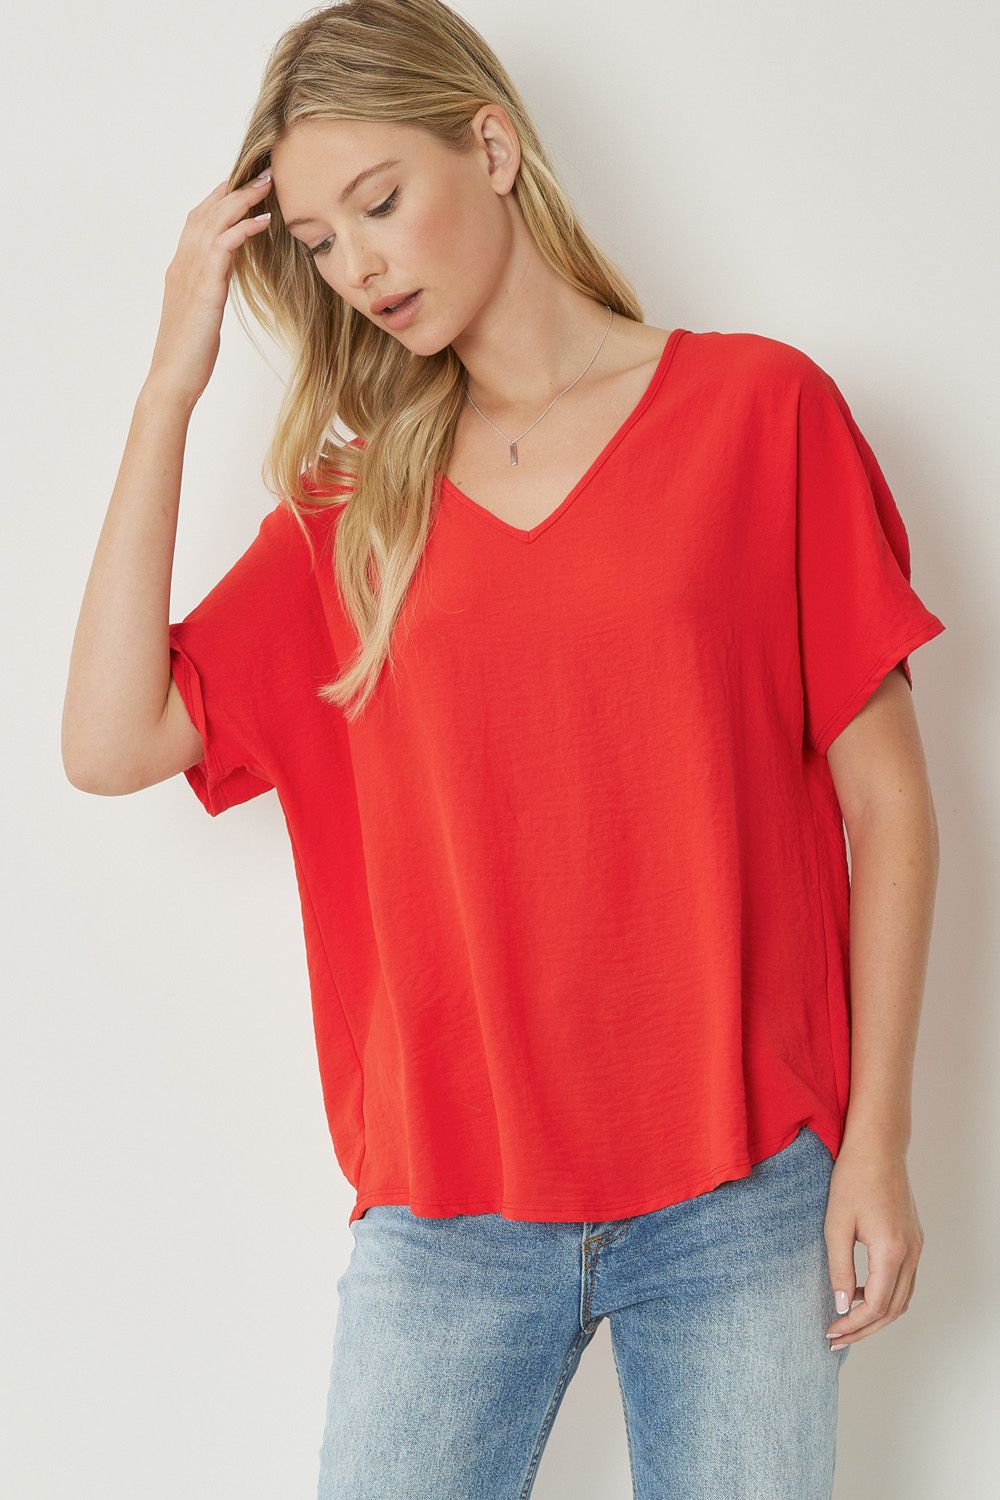 Women's red basic v-neck shirt.